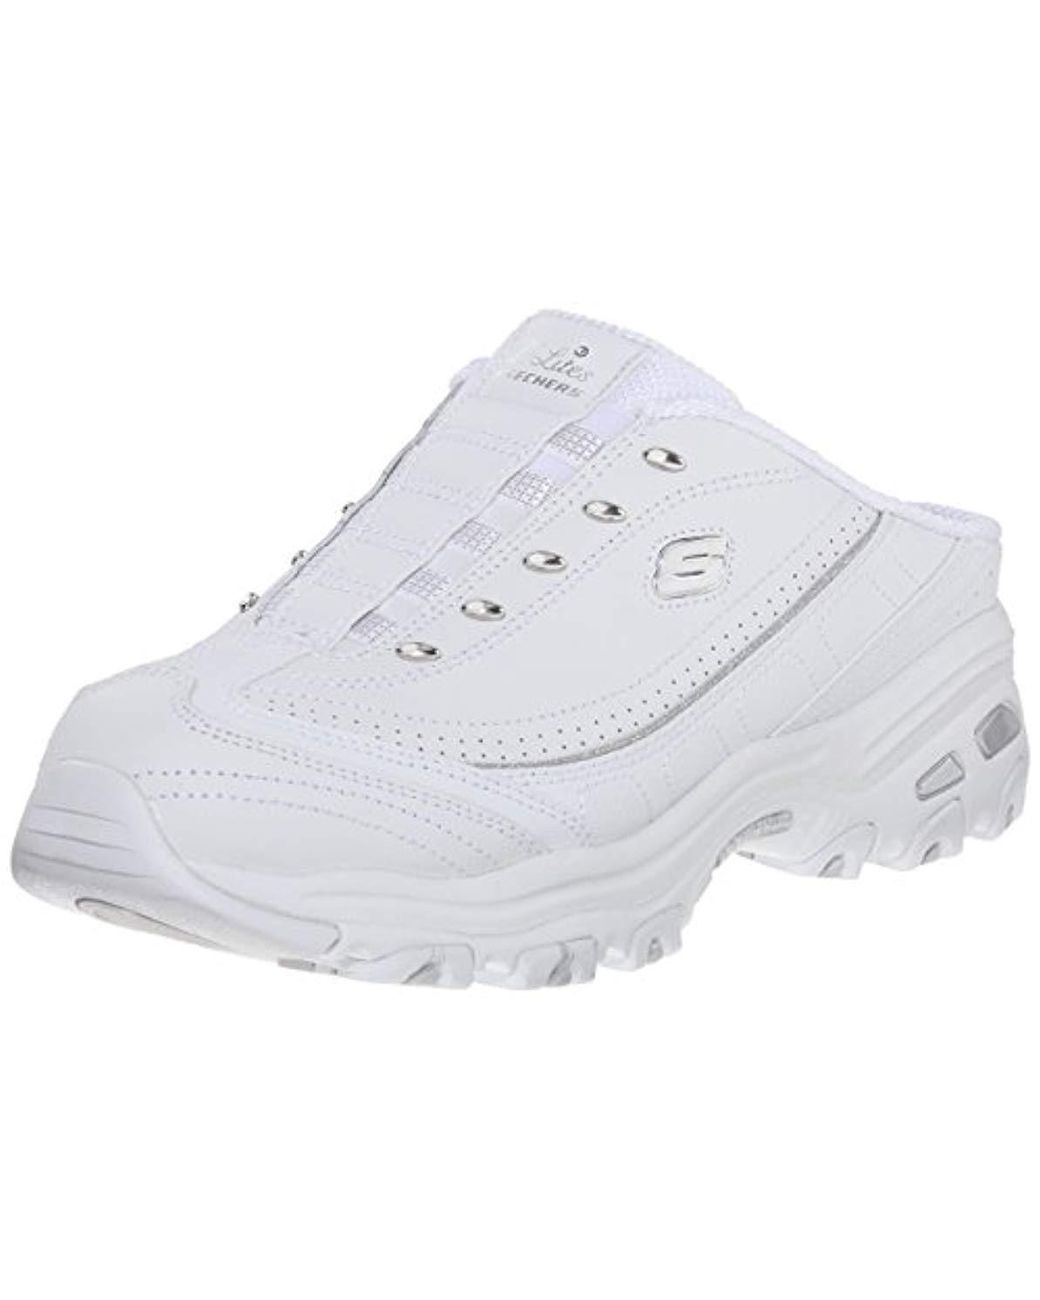 Skechers Leather Sport D'lites Slip-on Mule Sneaker in White/Silver ...